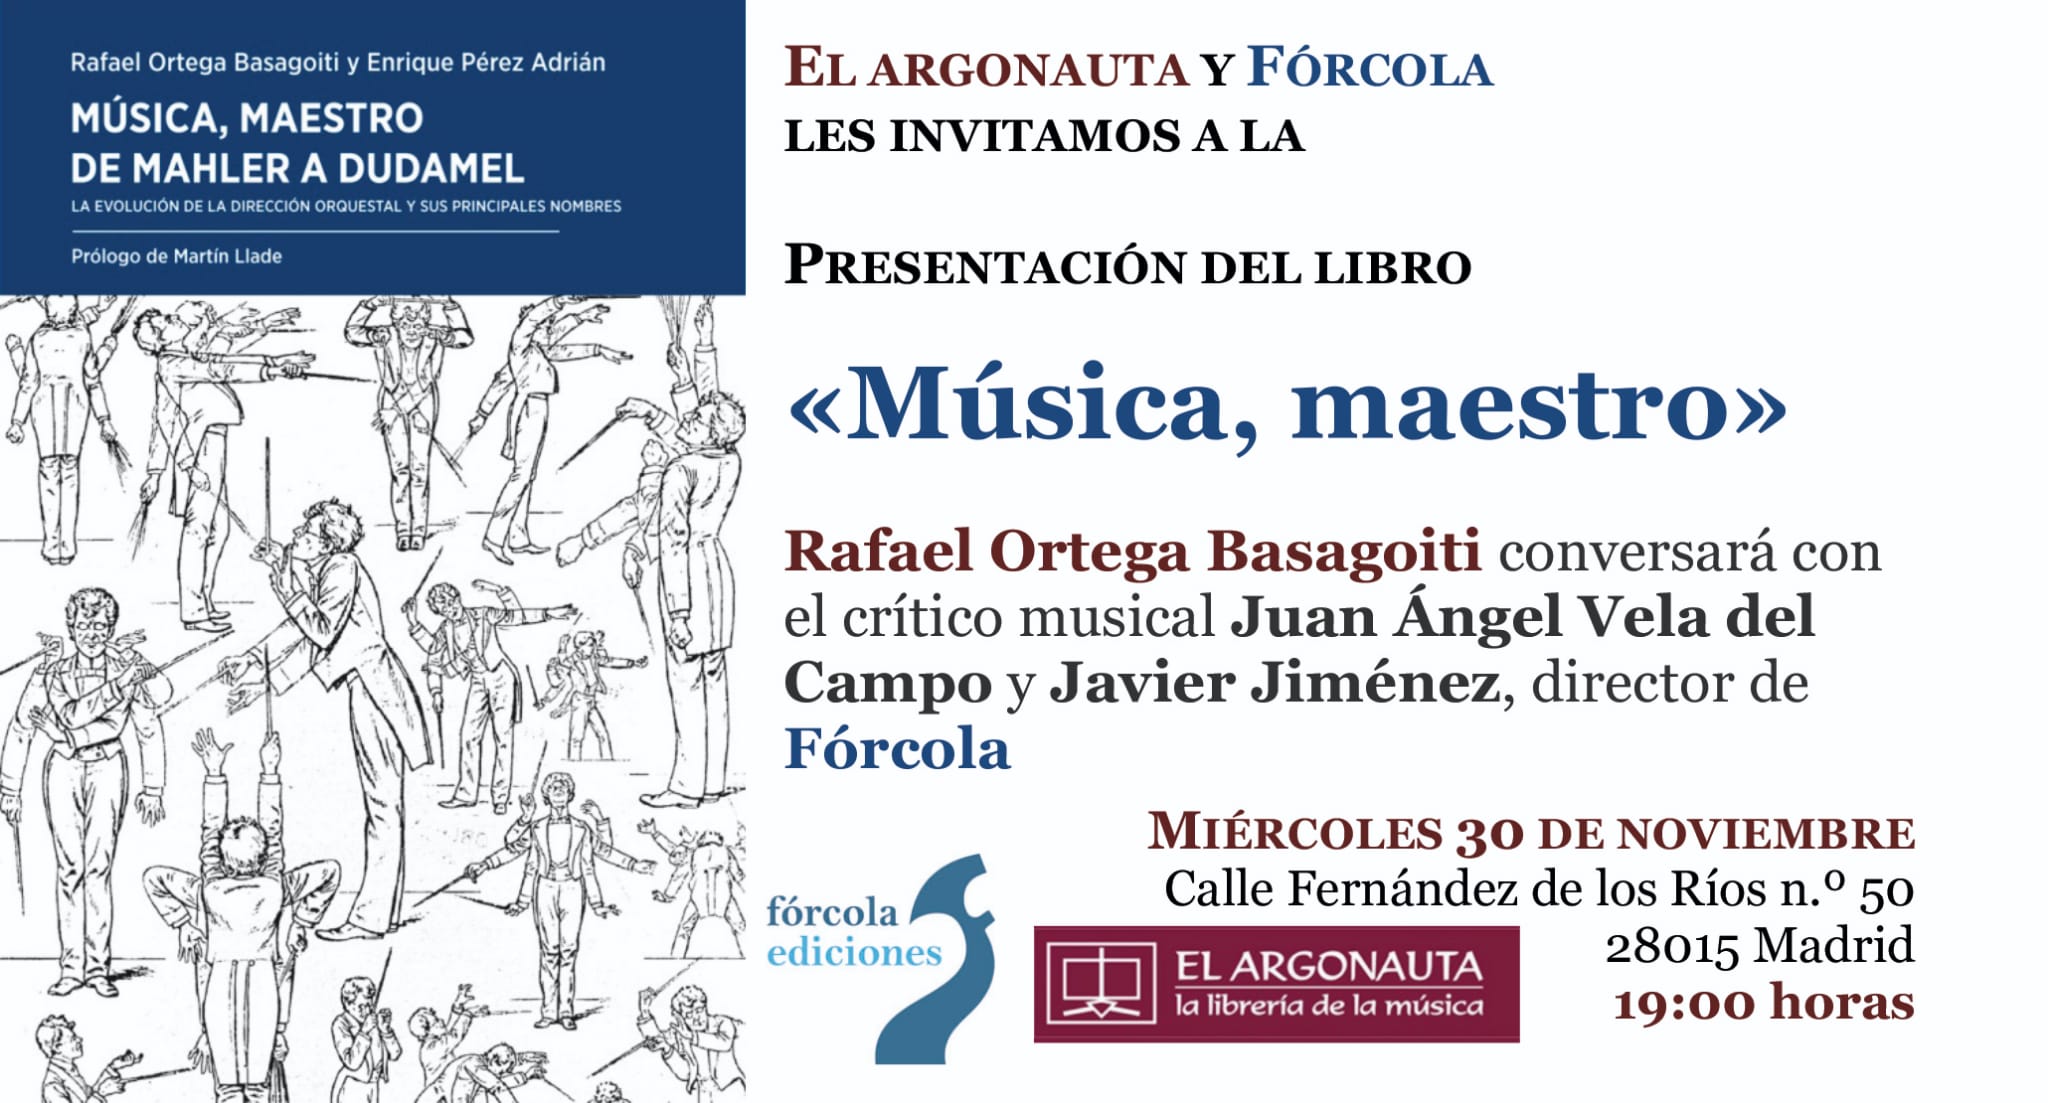 Presentación del libro 'Música, maestro' de Rafael Ortega Basagoiti y Enrique Pérez Adrián